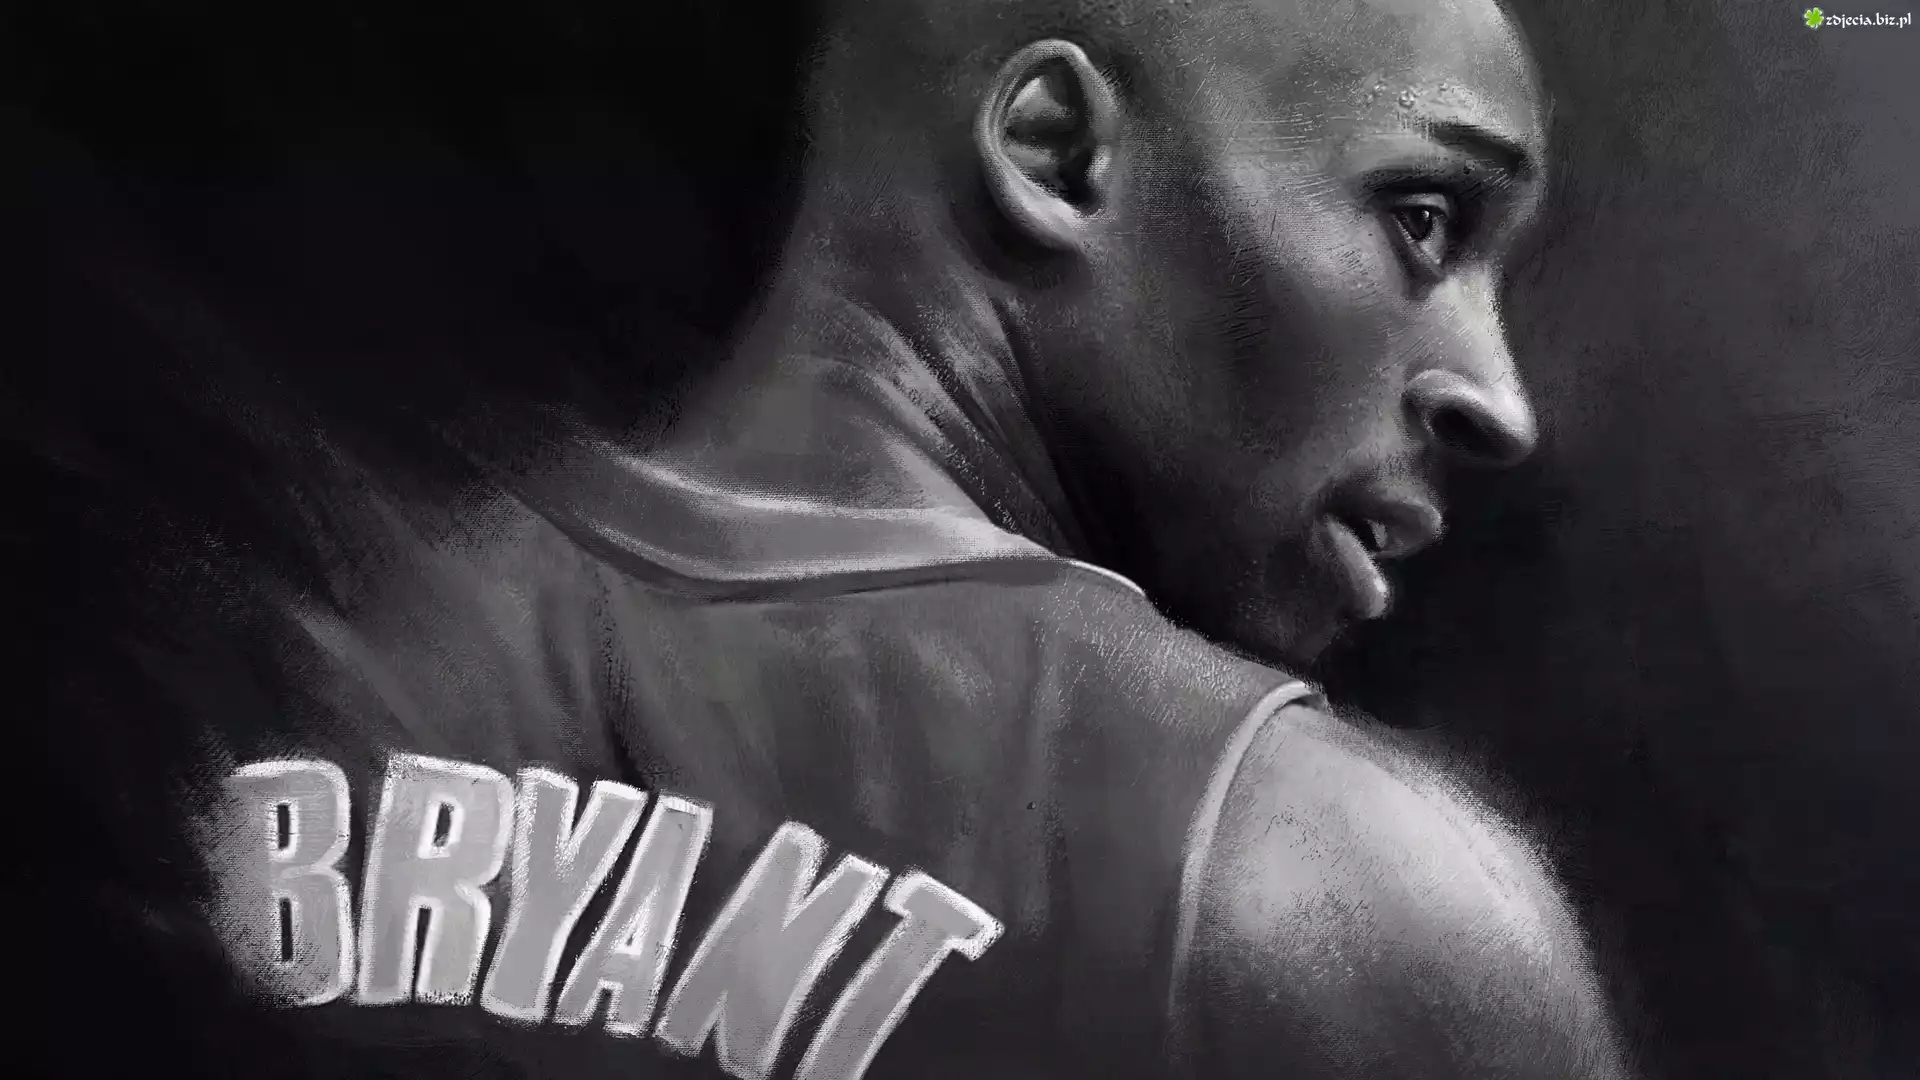 Grafika, Koszykarz, Kobe Bryant